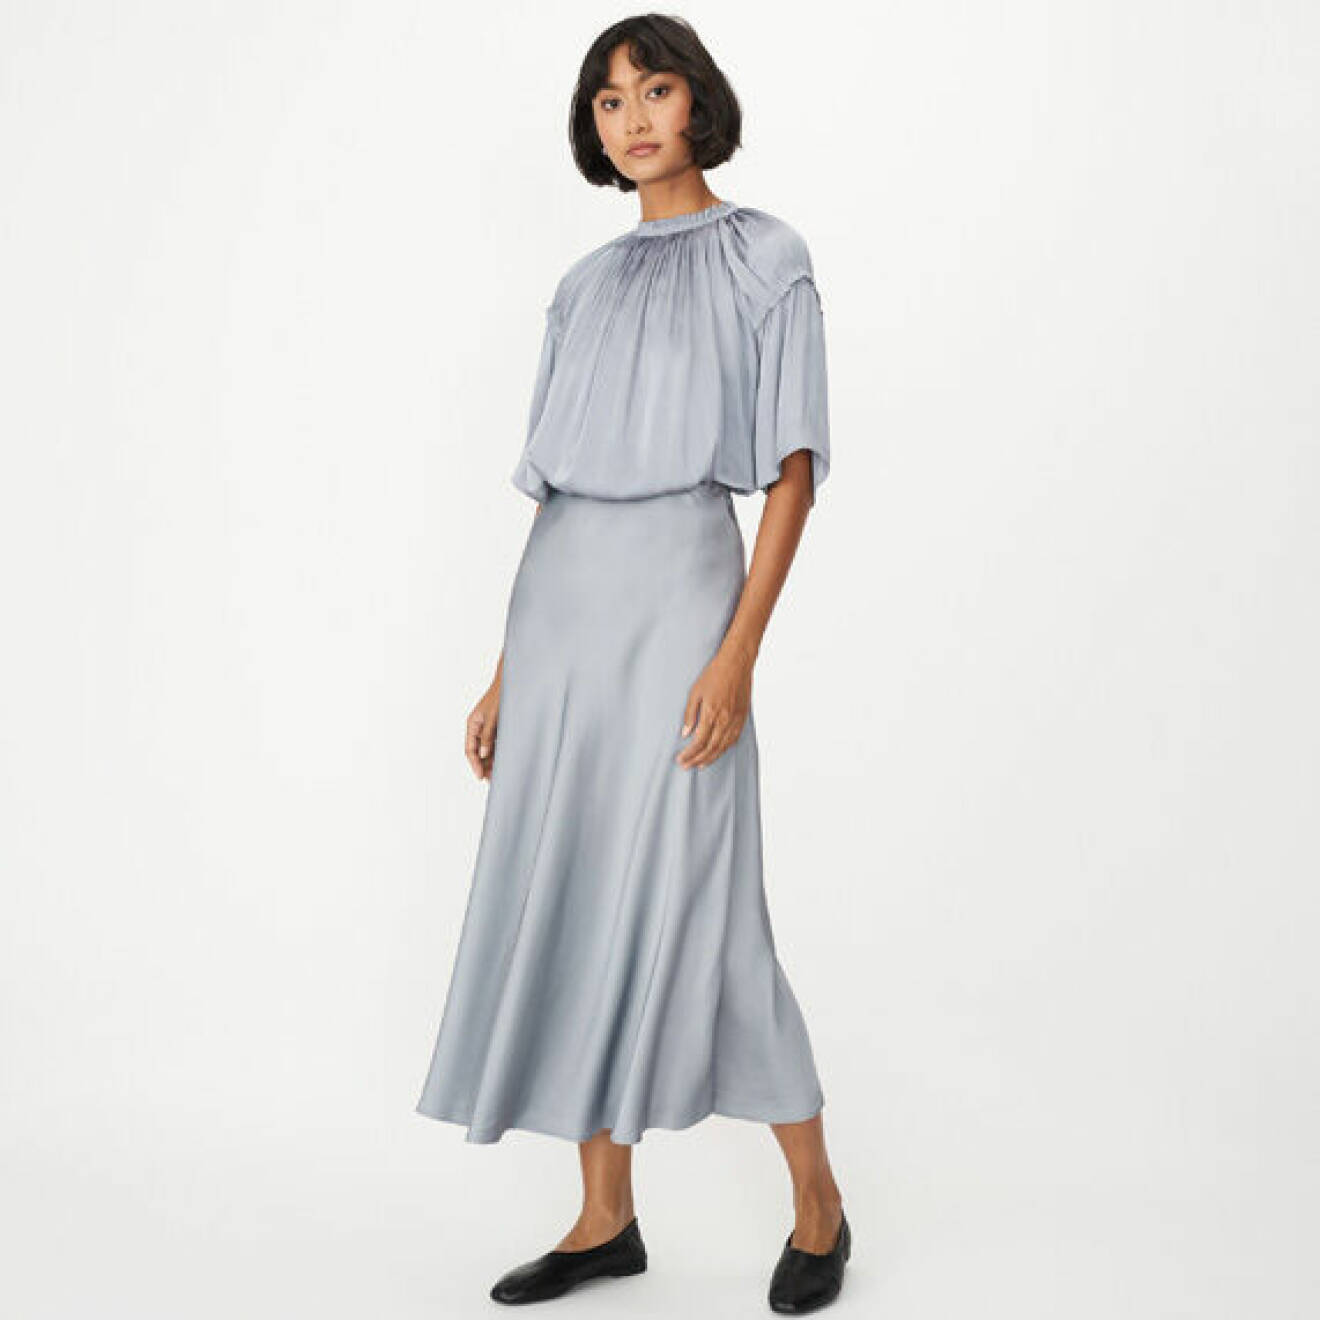 Outfit jul och nyår 2021: ljusblått satinset med blus och kjol från Wera